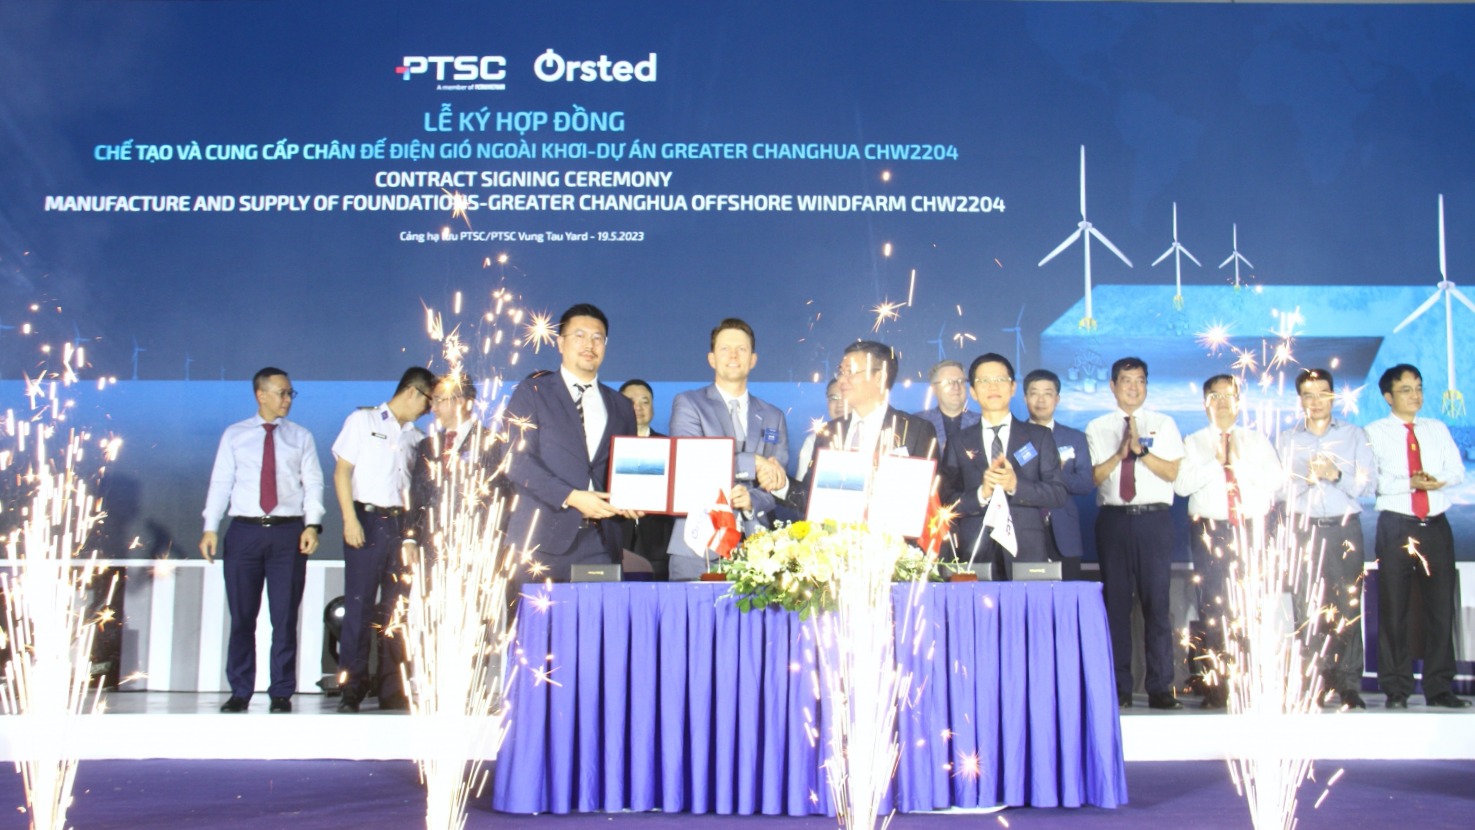 Tổng Công ty Cổ phần Dịch vụ Kỹ thuật Dầu khí Việt Nam ký hợp đồng Orsted